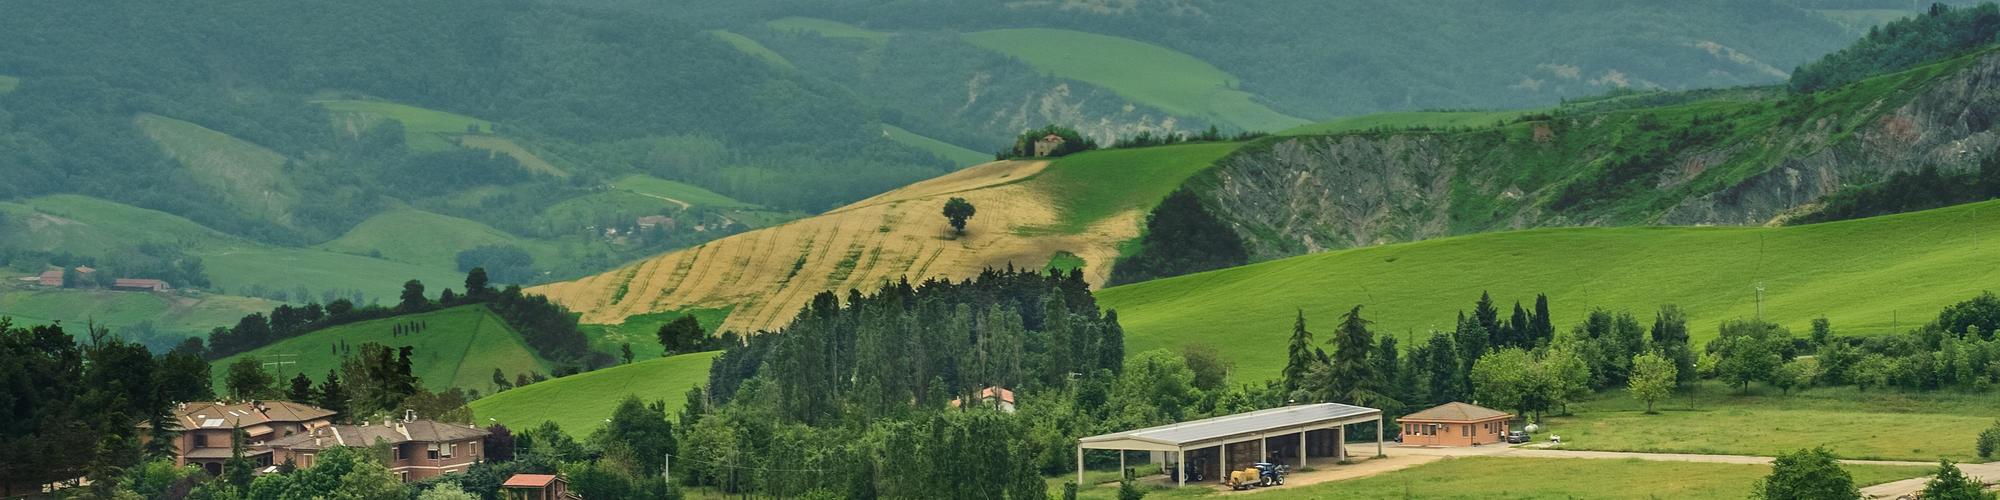 Landscape of the Emilia-Romagna region